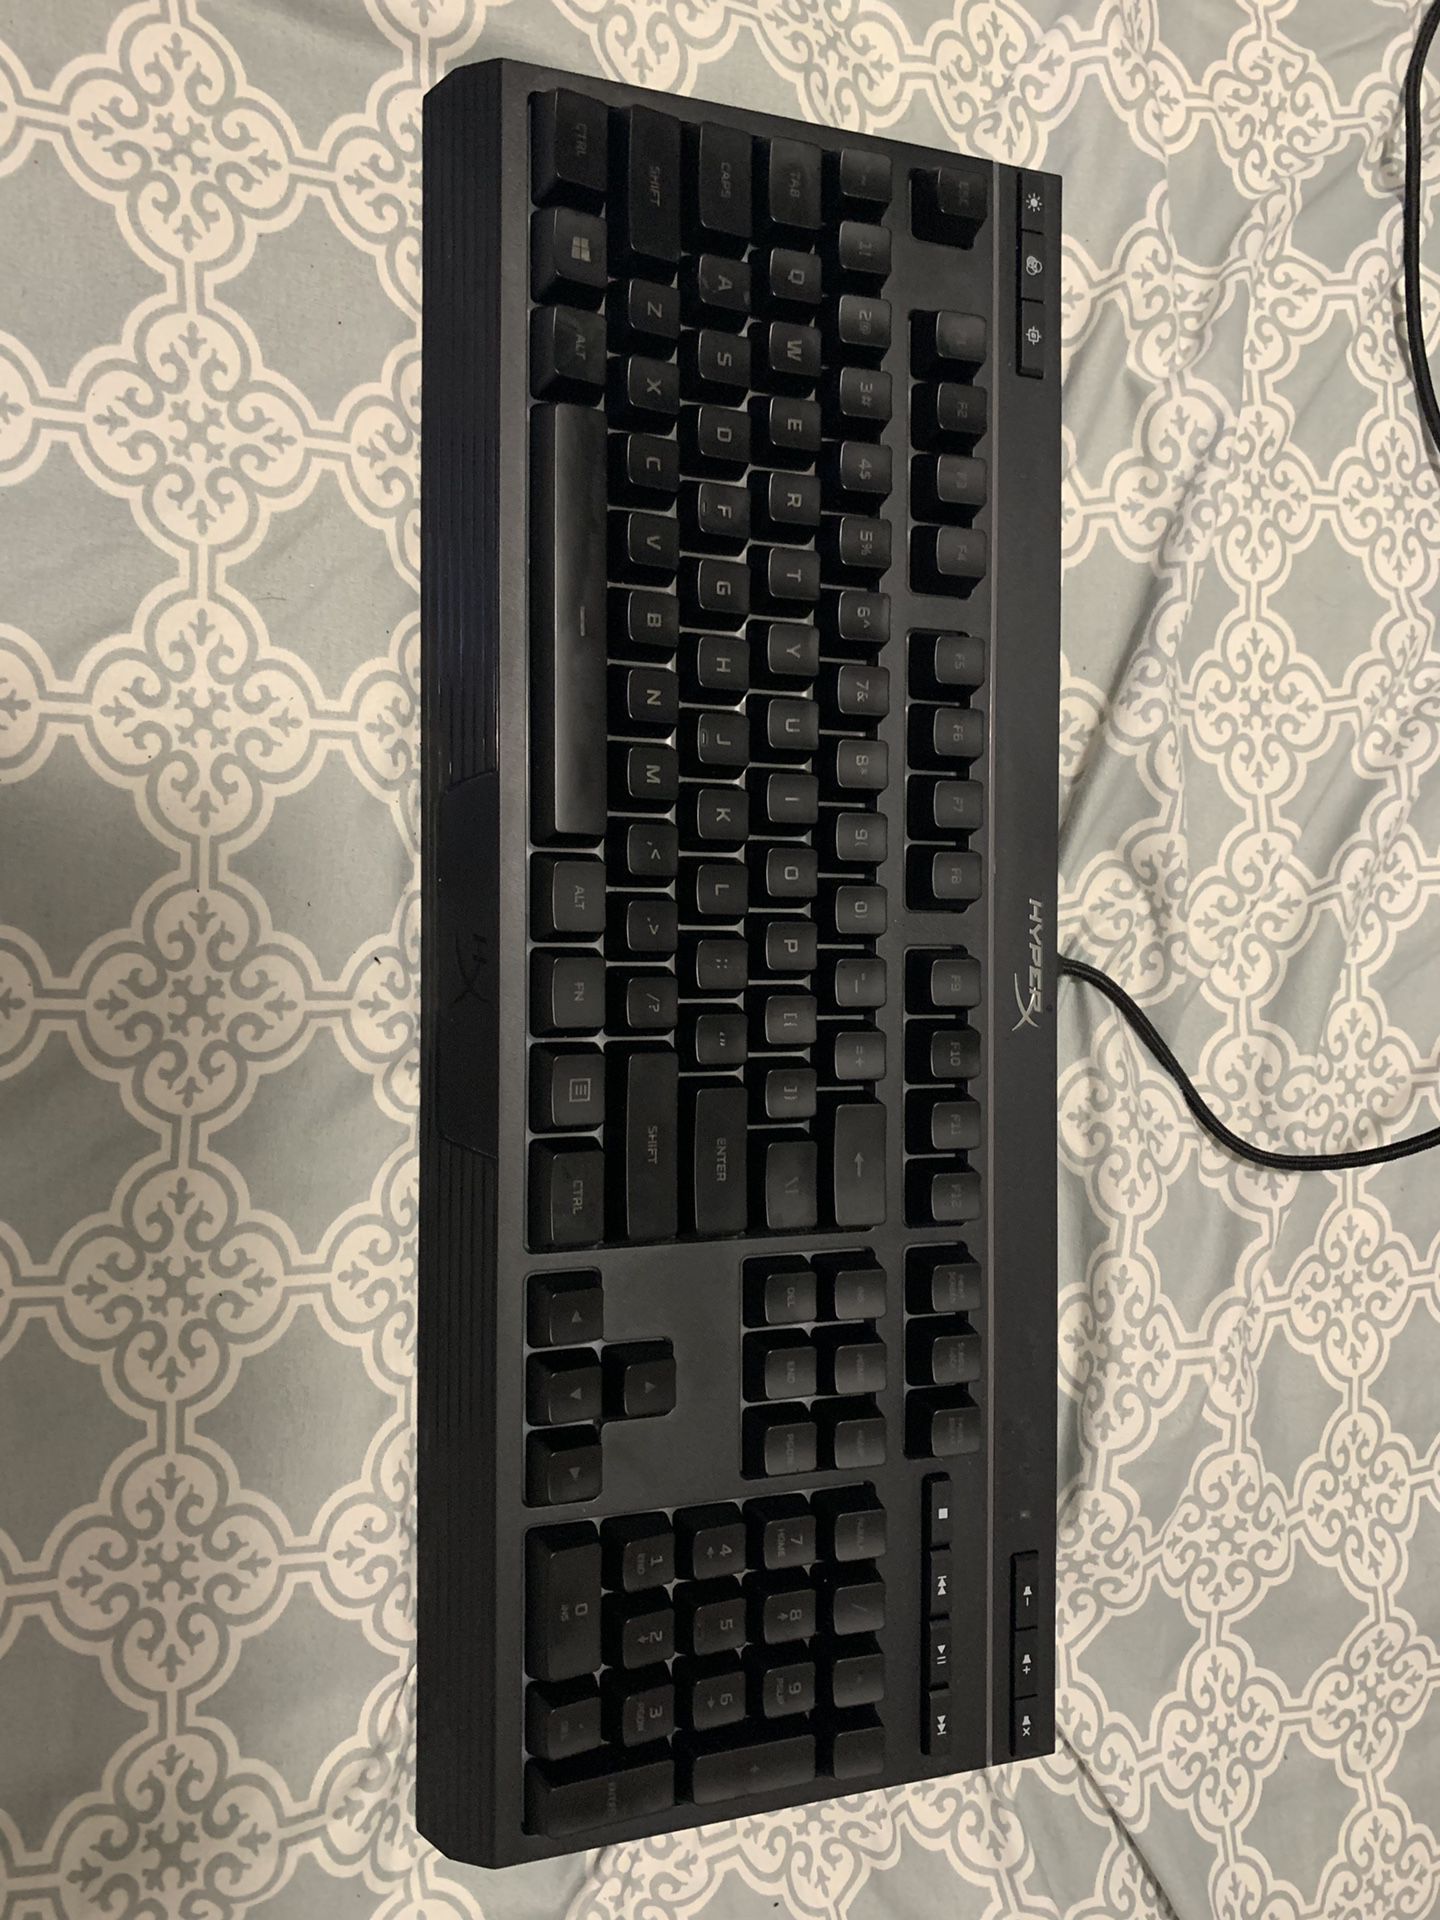 HyperX Gaming Keyboard